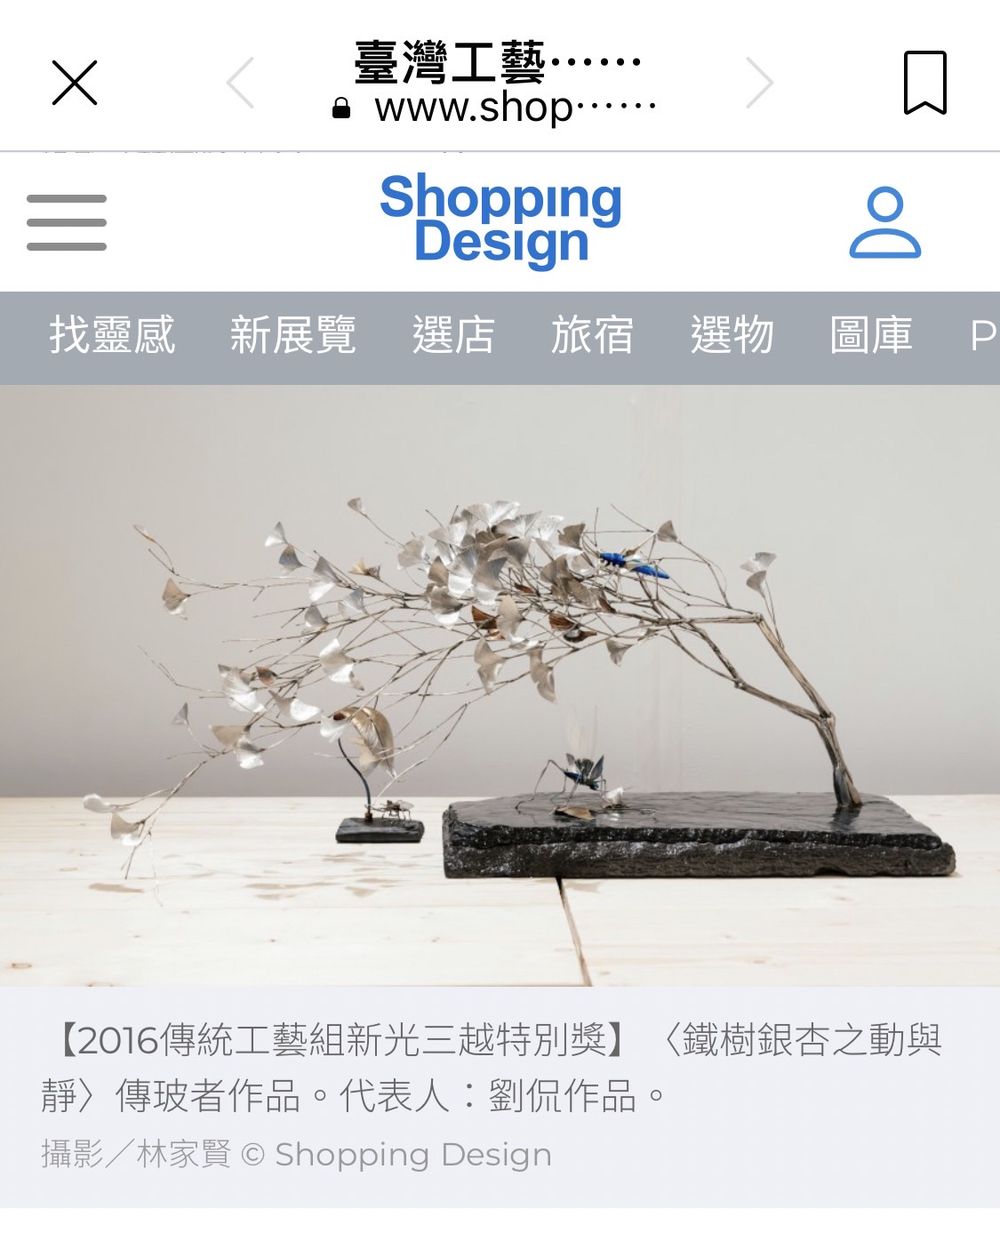 2016傳統工藝組新光三越特別獎】〈鐵樹銀杏之動與靜〉Shopping Design